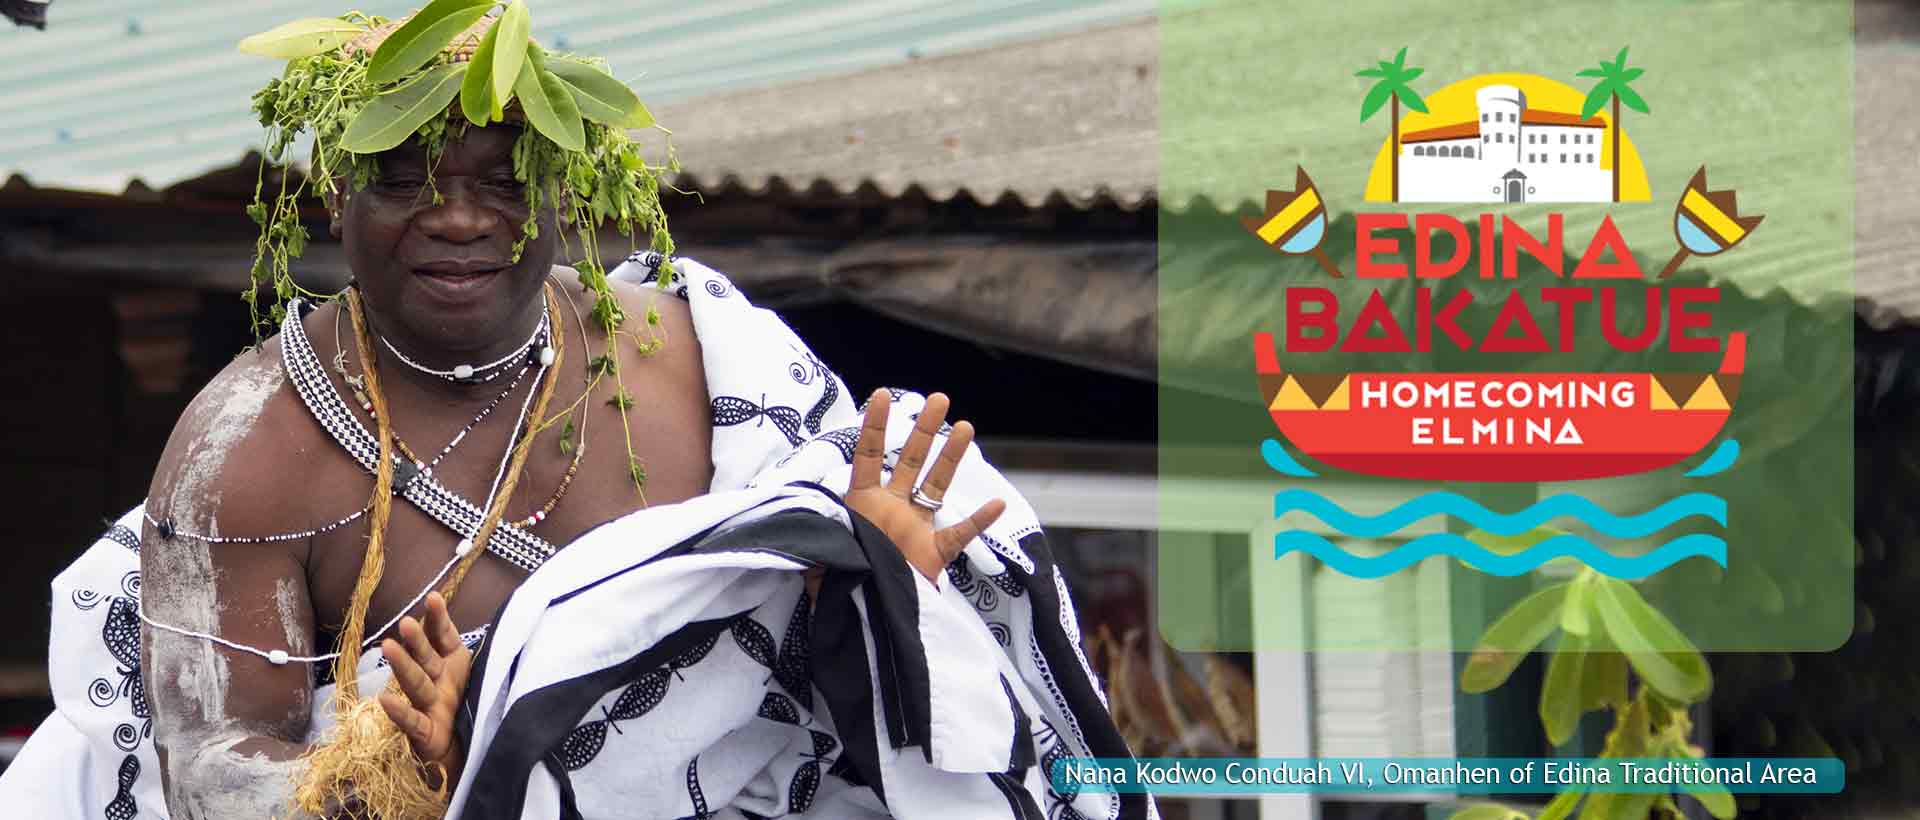 Bakatue Festival Elmina Edina, Bakatue, BRAND ELMINA